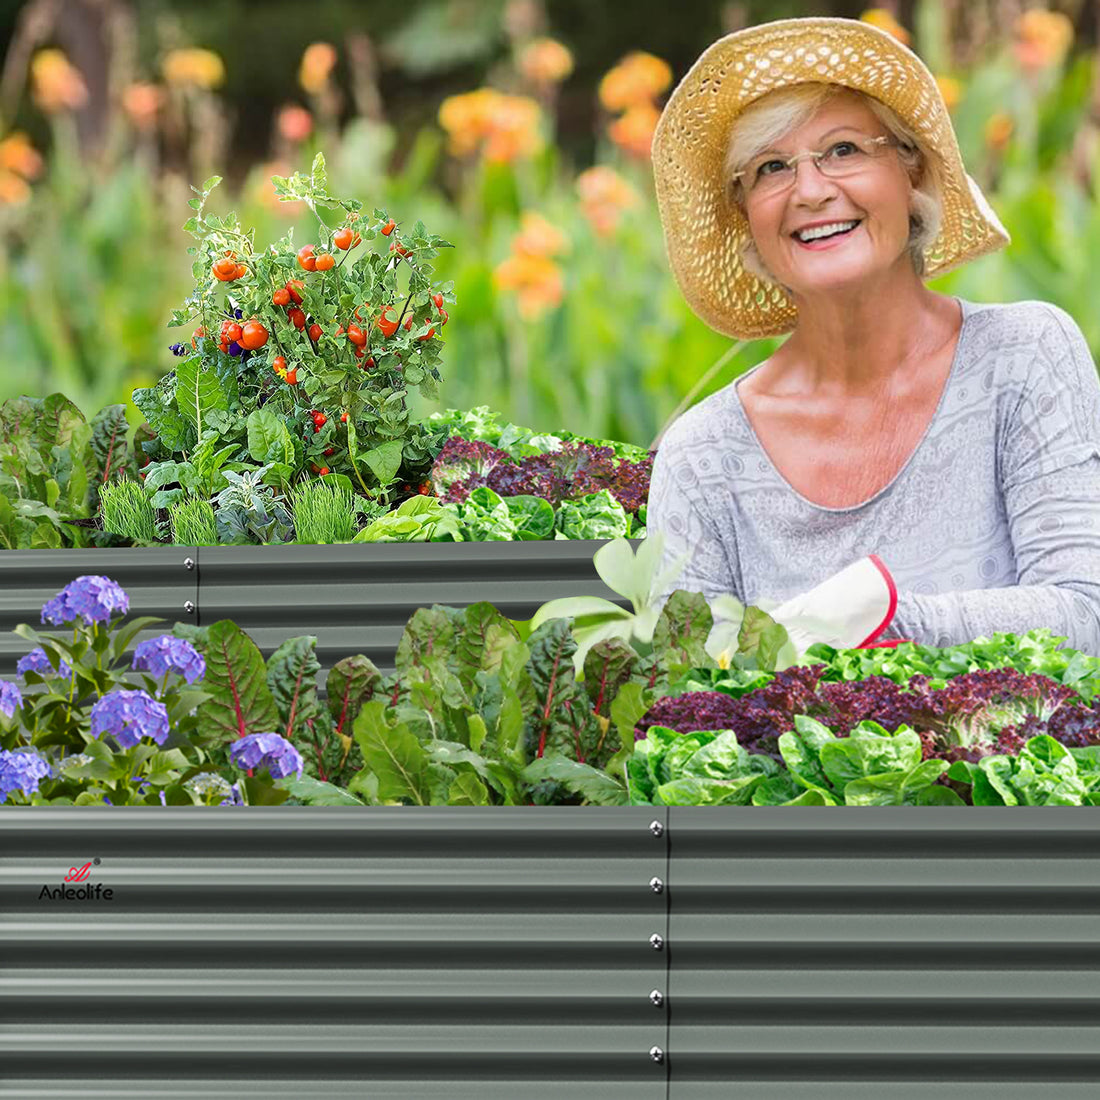 Anleolife Garden View: How to Succeed in Raised Bed Gardening with Hügelkultur Method